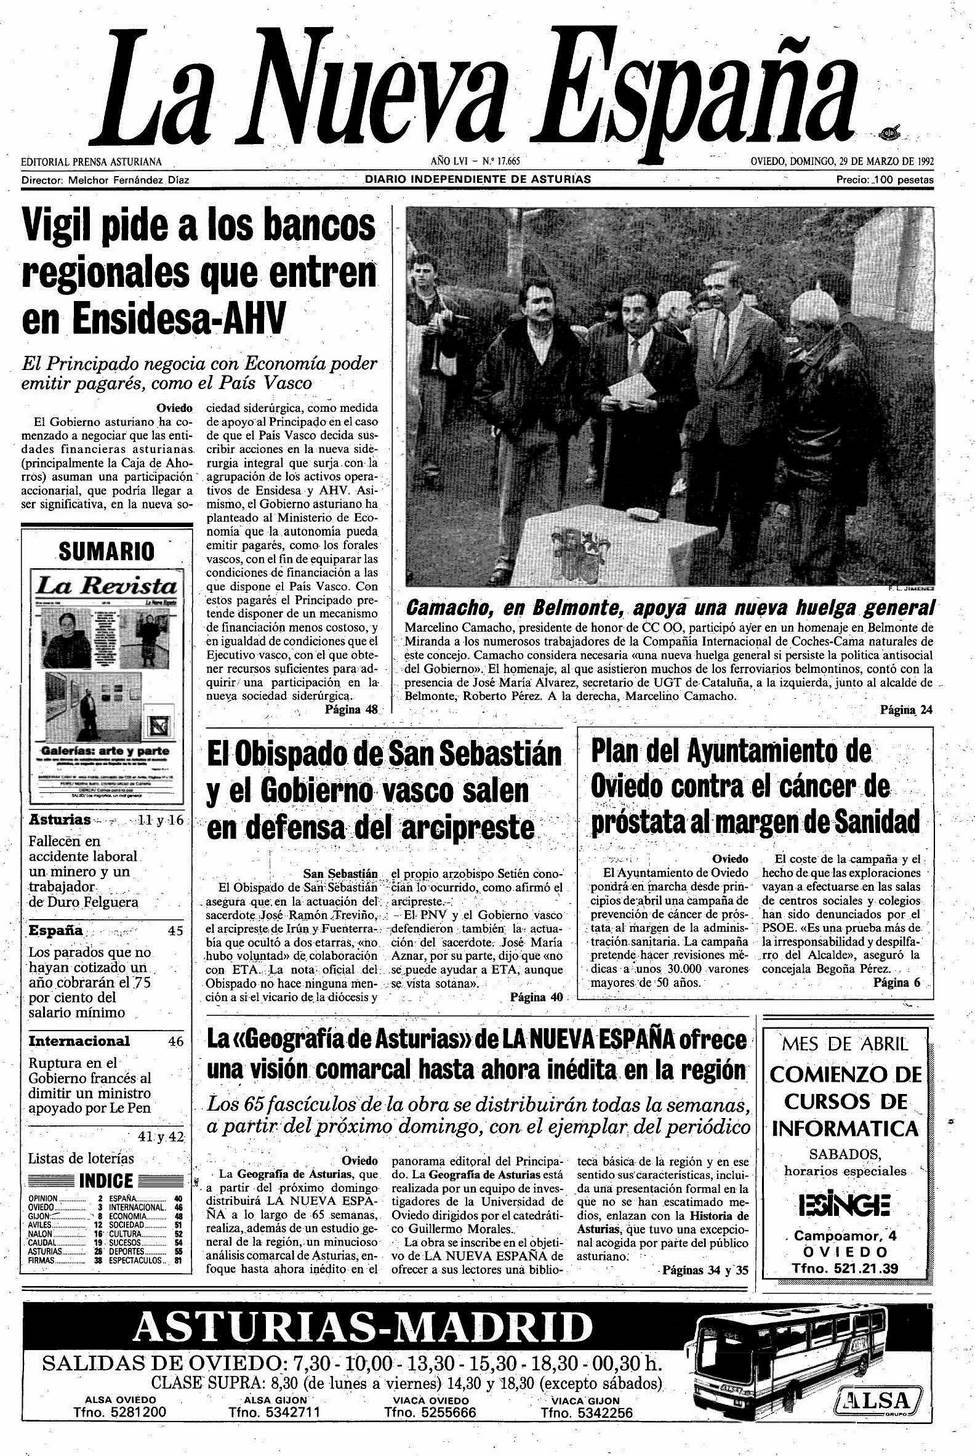 Portada del Domingo, 29 de Marzo de 1992